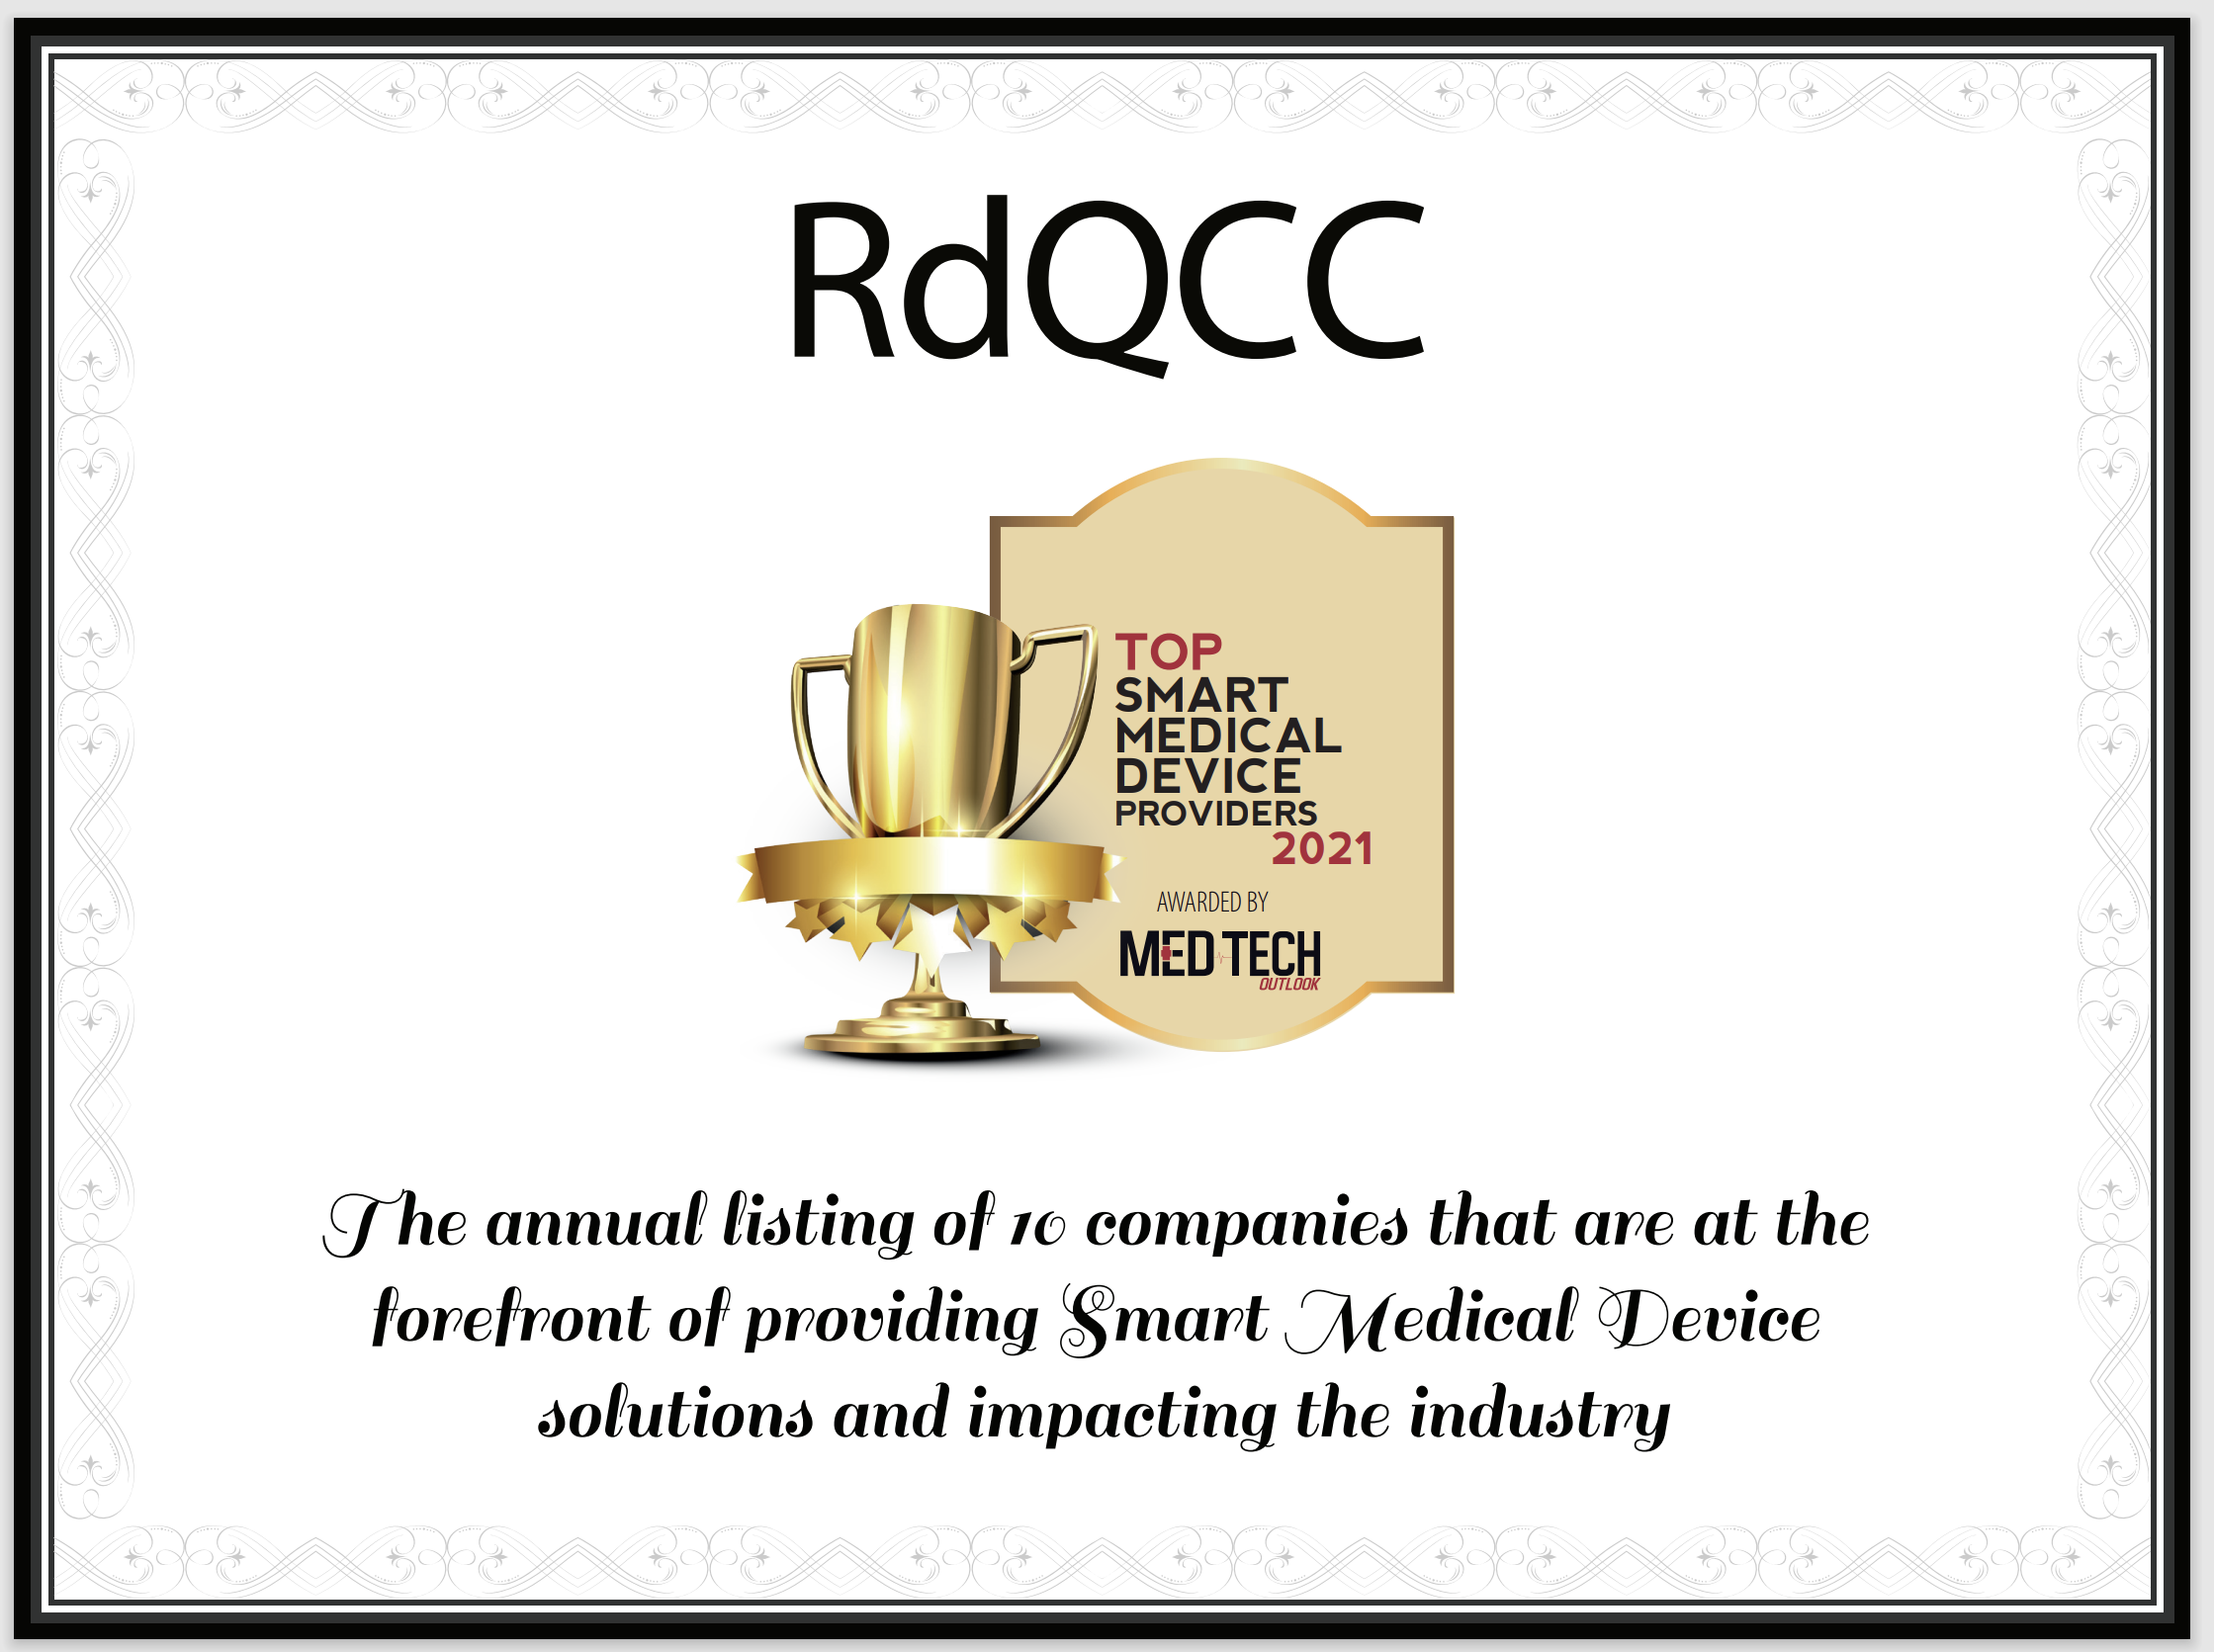 RdQCC Award